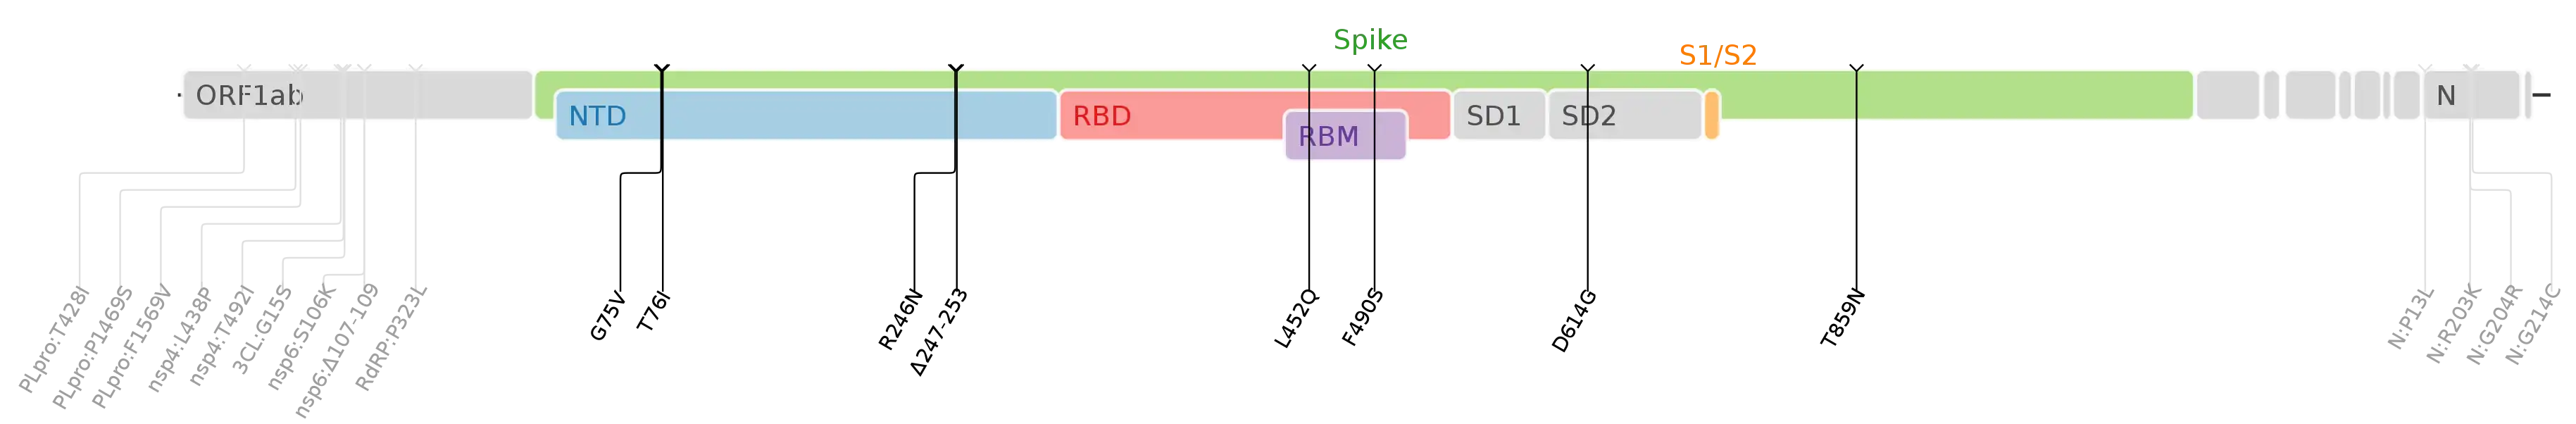 Les mutations du variant Lambda sur une carte génomique du SARS-CoV-2